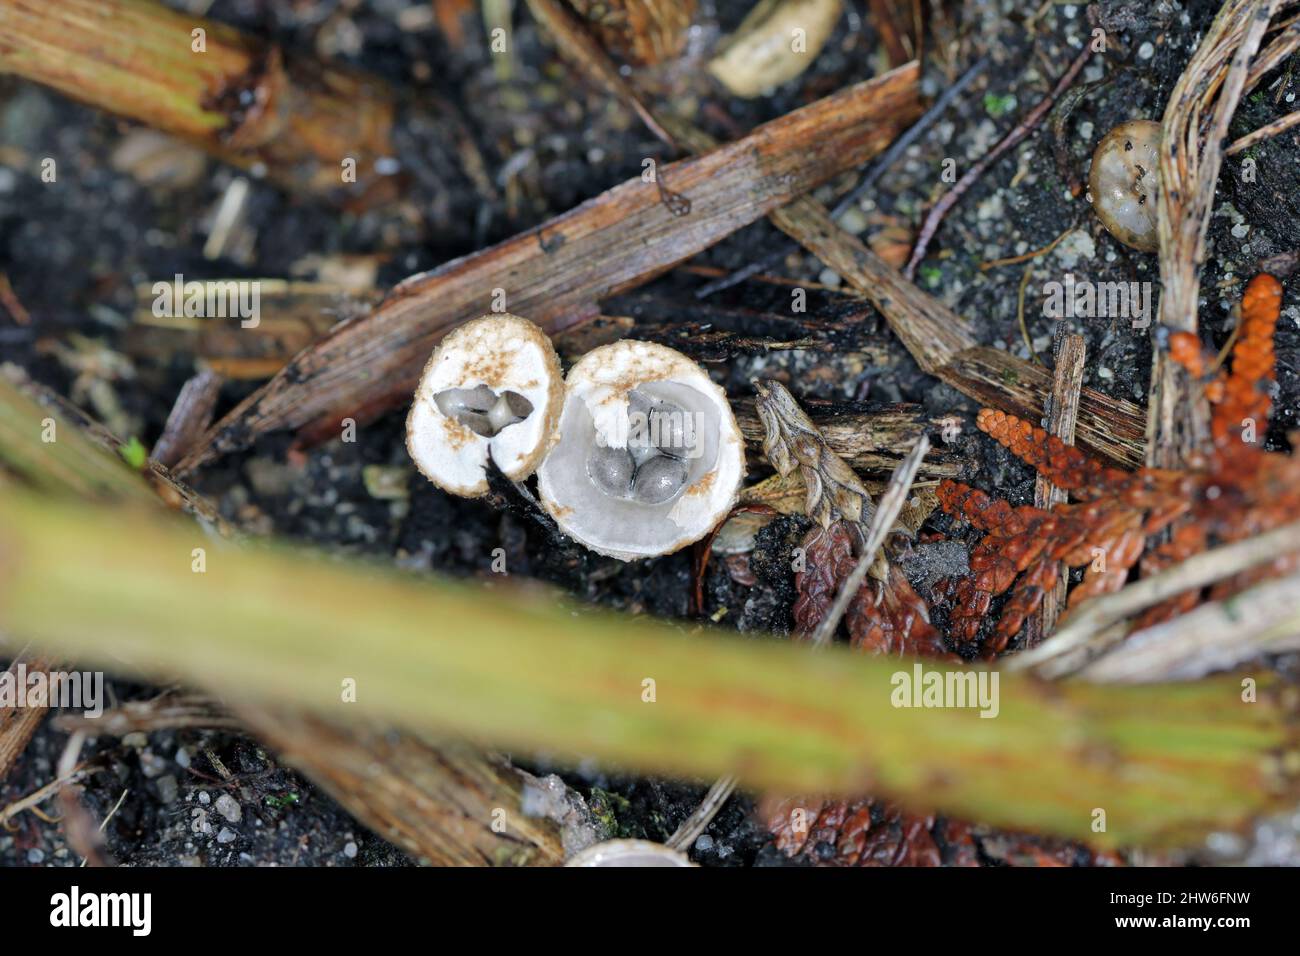 White Bird's Nest Fungus (Crucibulum laeve) fruiting bodies with egg-shaped peridioles inside the 'nest'. Stock Photo